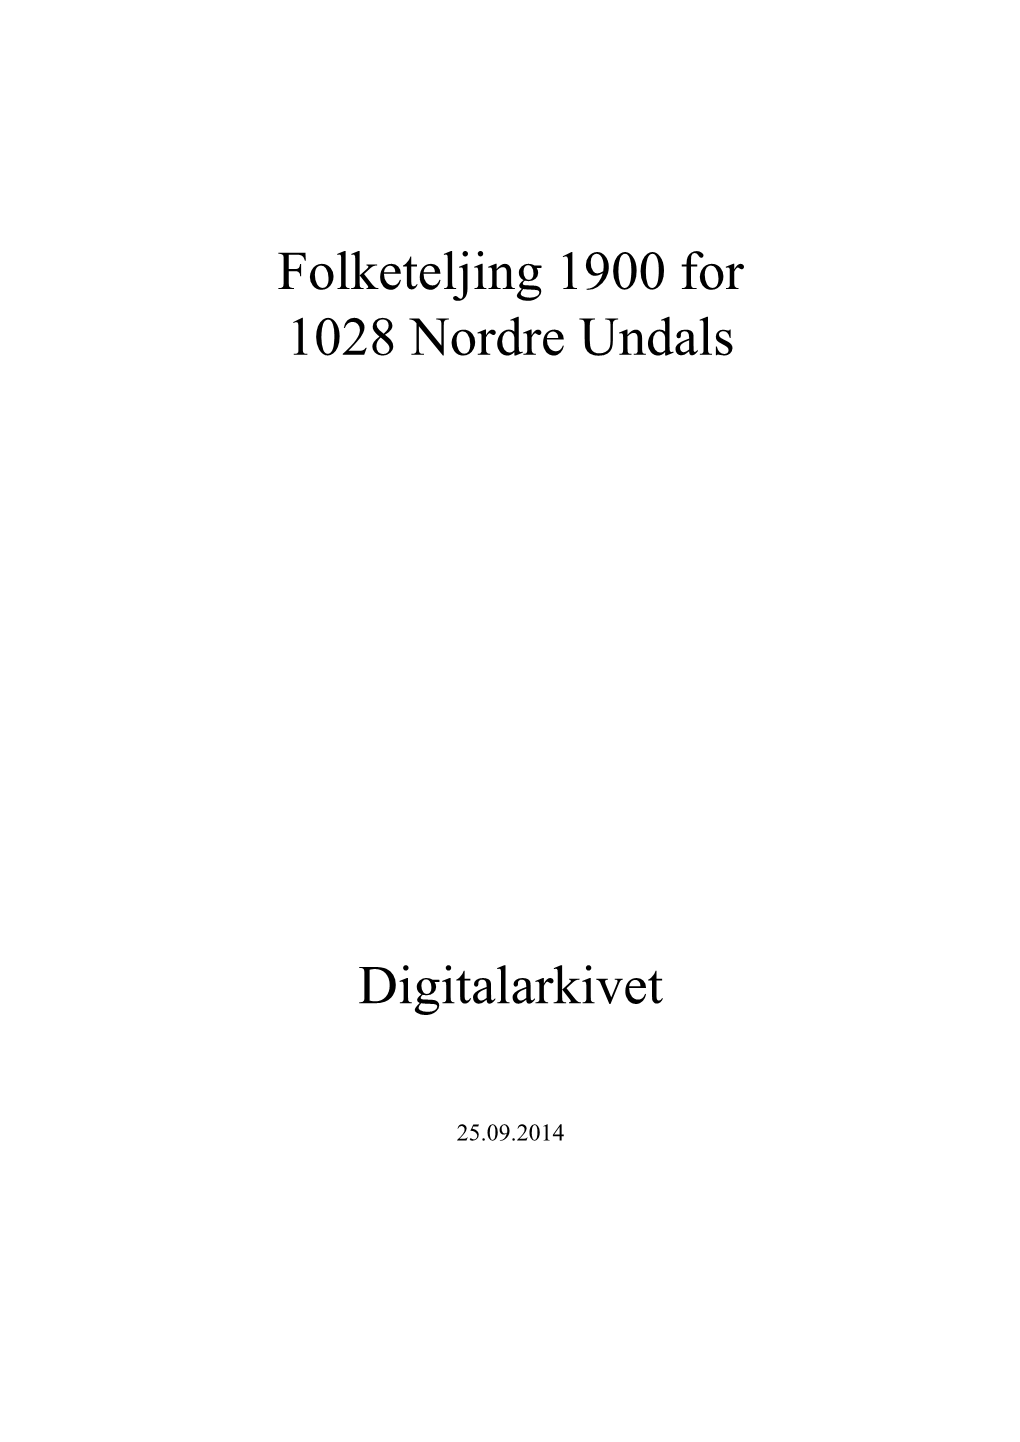 Folketeljing 1900 for 1028 Nordre Undals Digitalarkivet